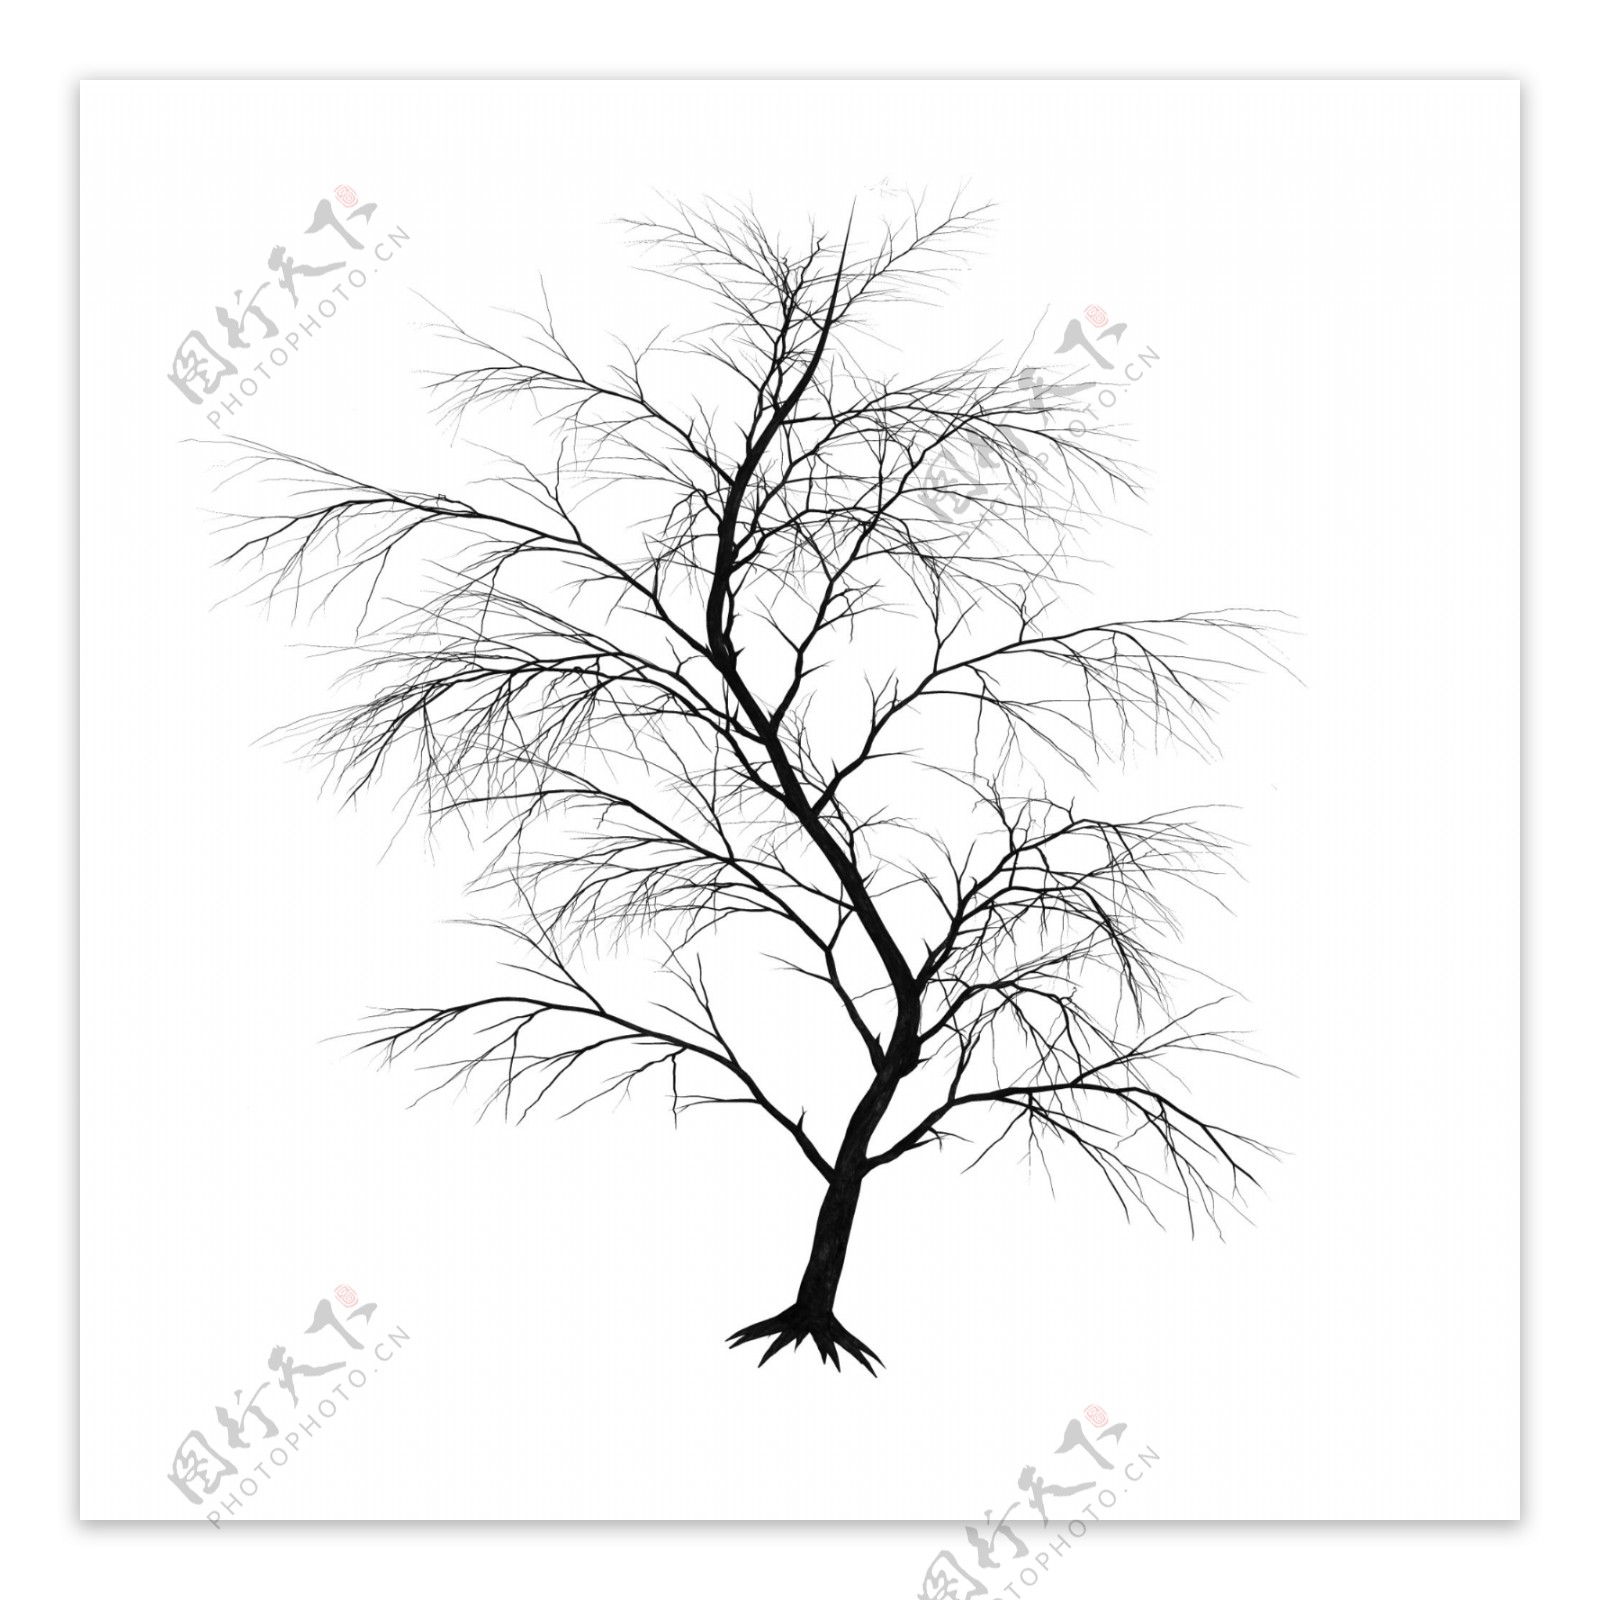 冬季树木黑色秃树装饰素材设计